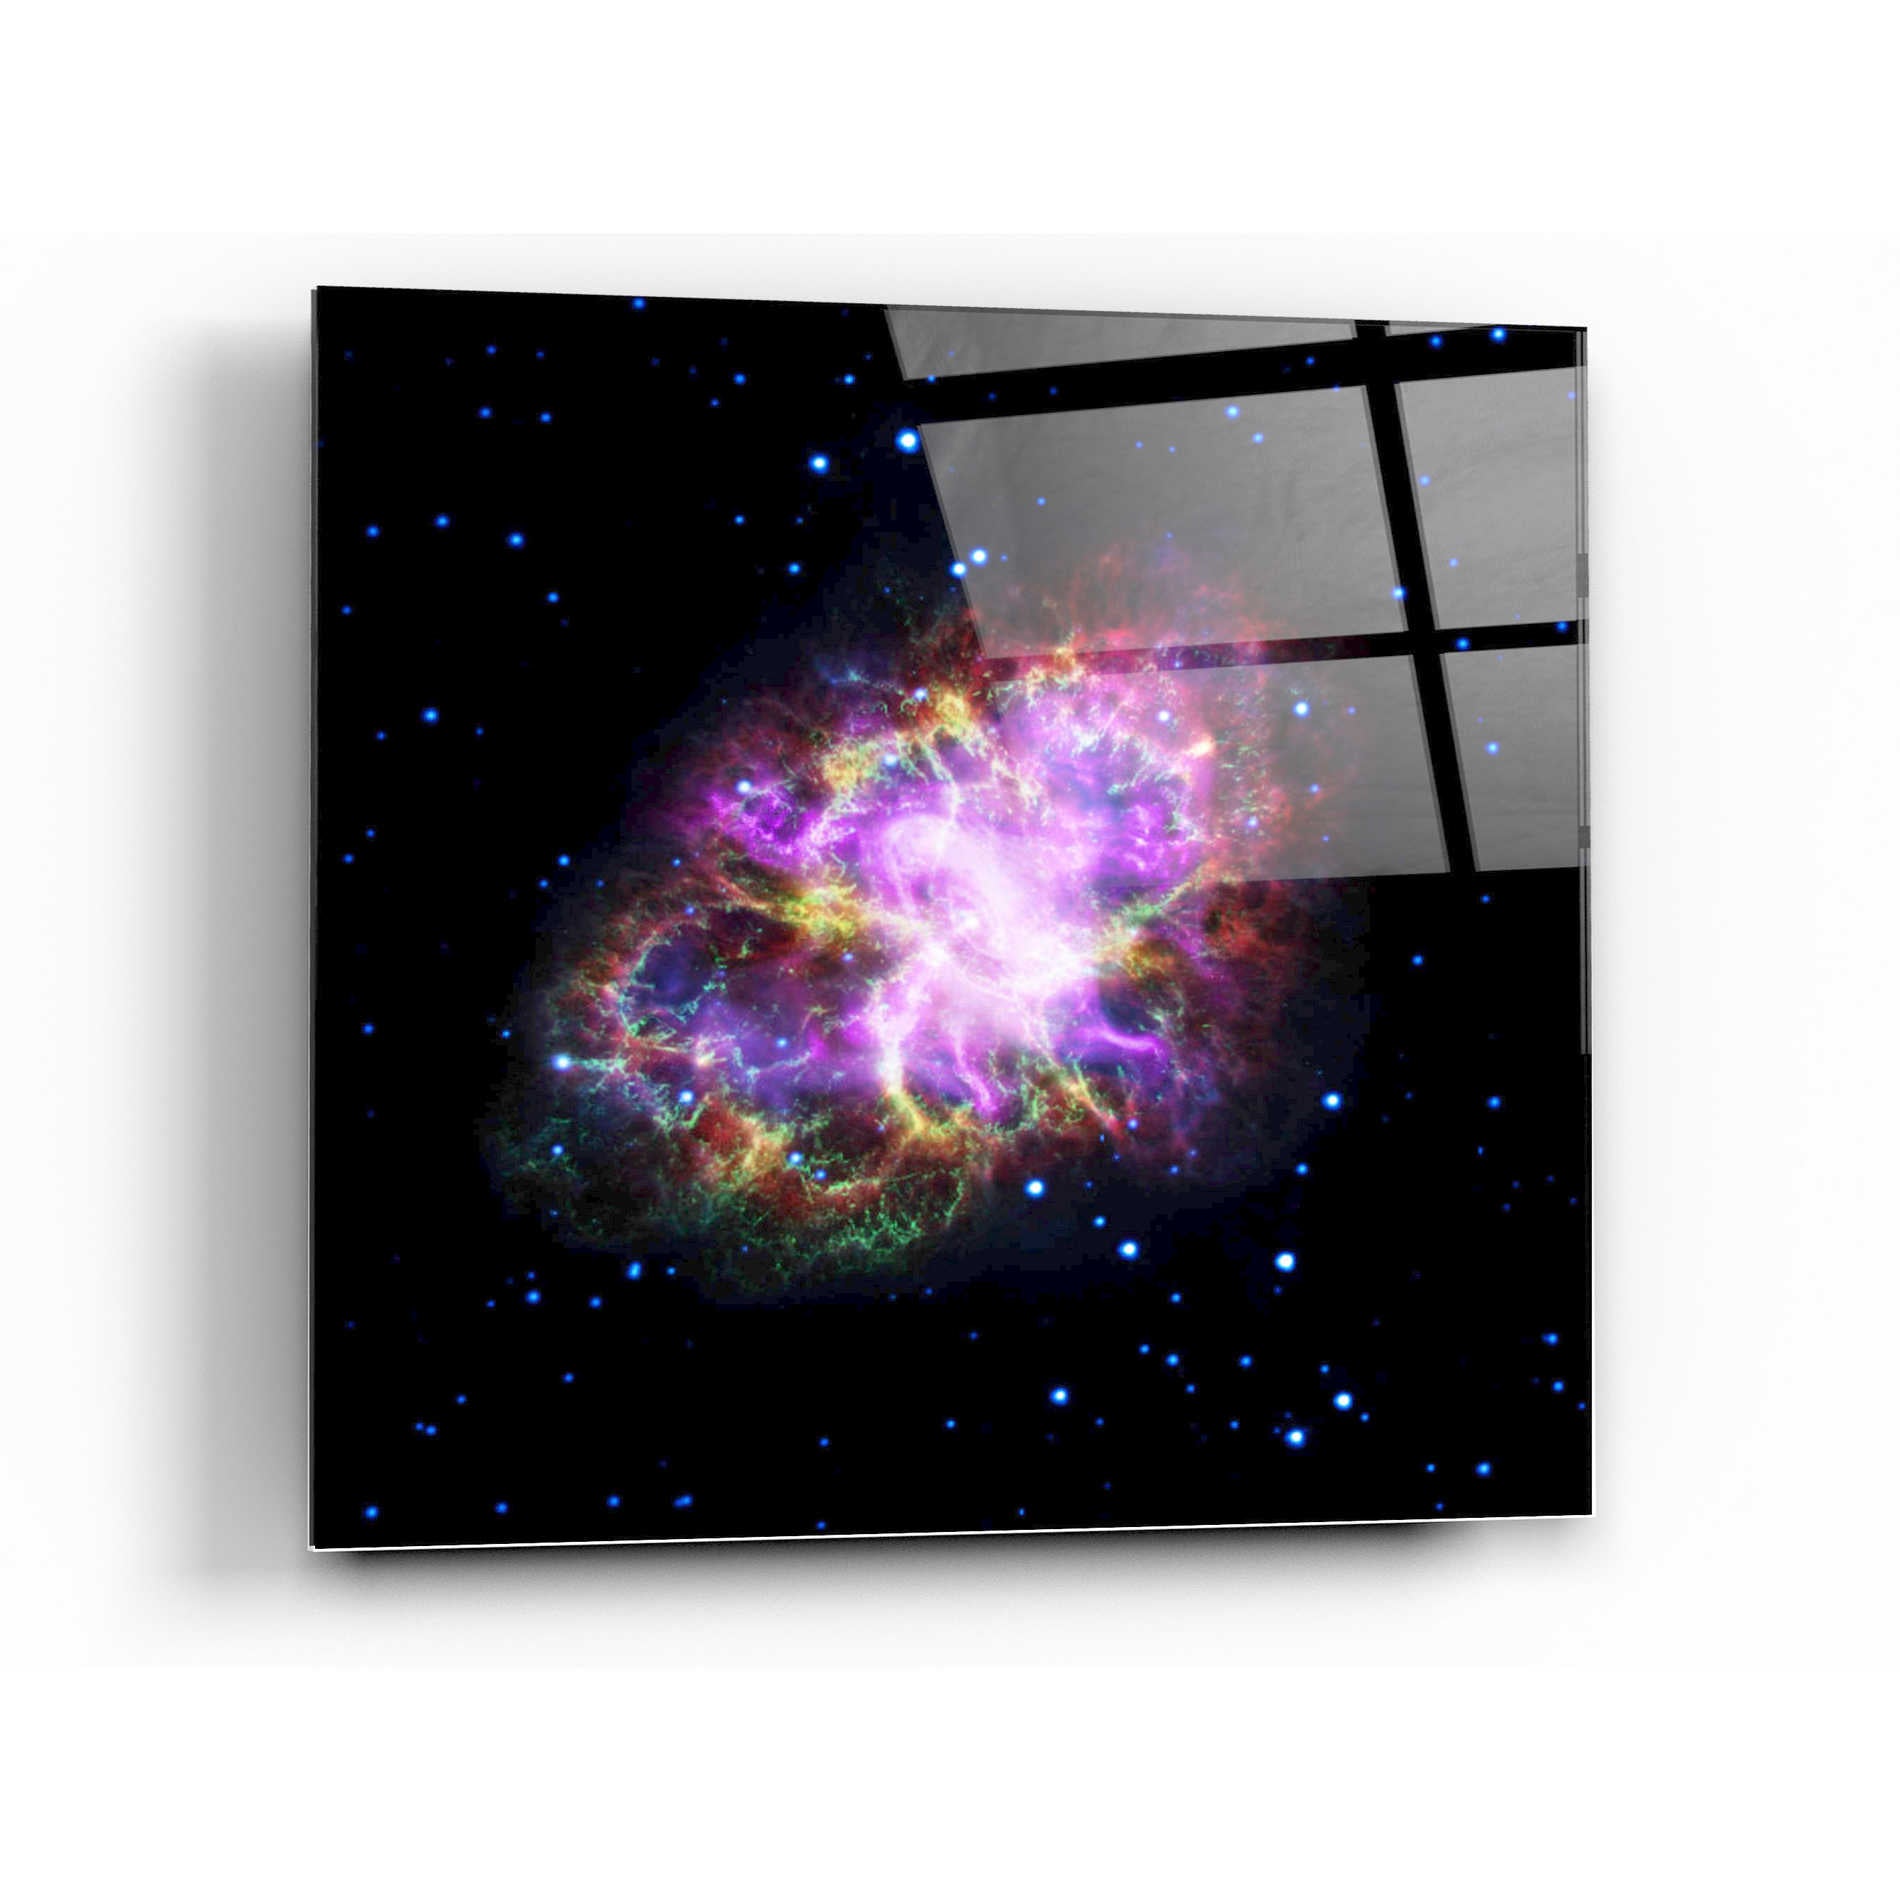 Epic Art "Crab Nebula Multi-Wavelengths" Hubble Space Telescope Acrylic Glass Wall Art